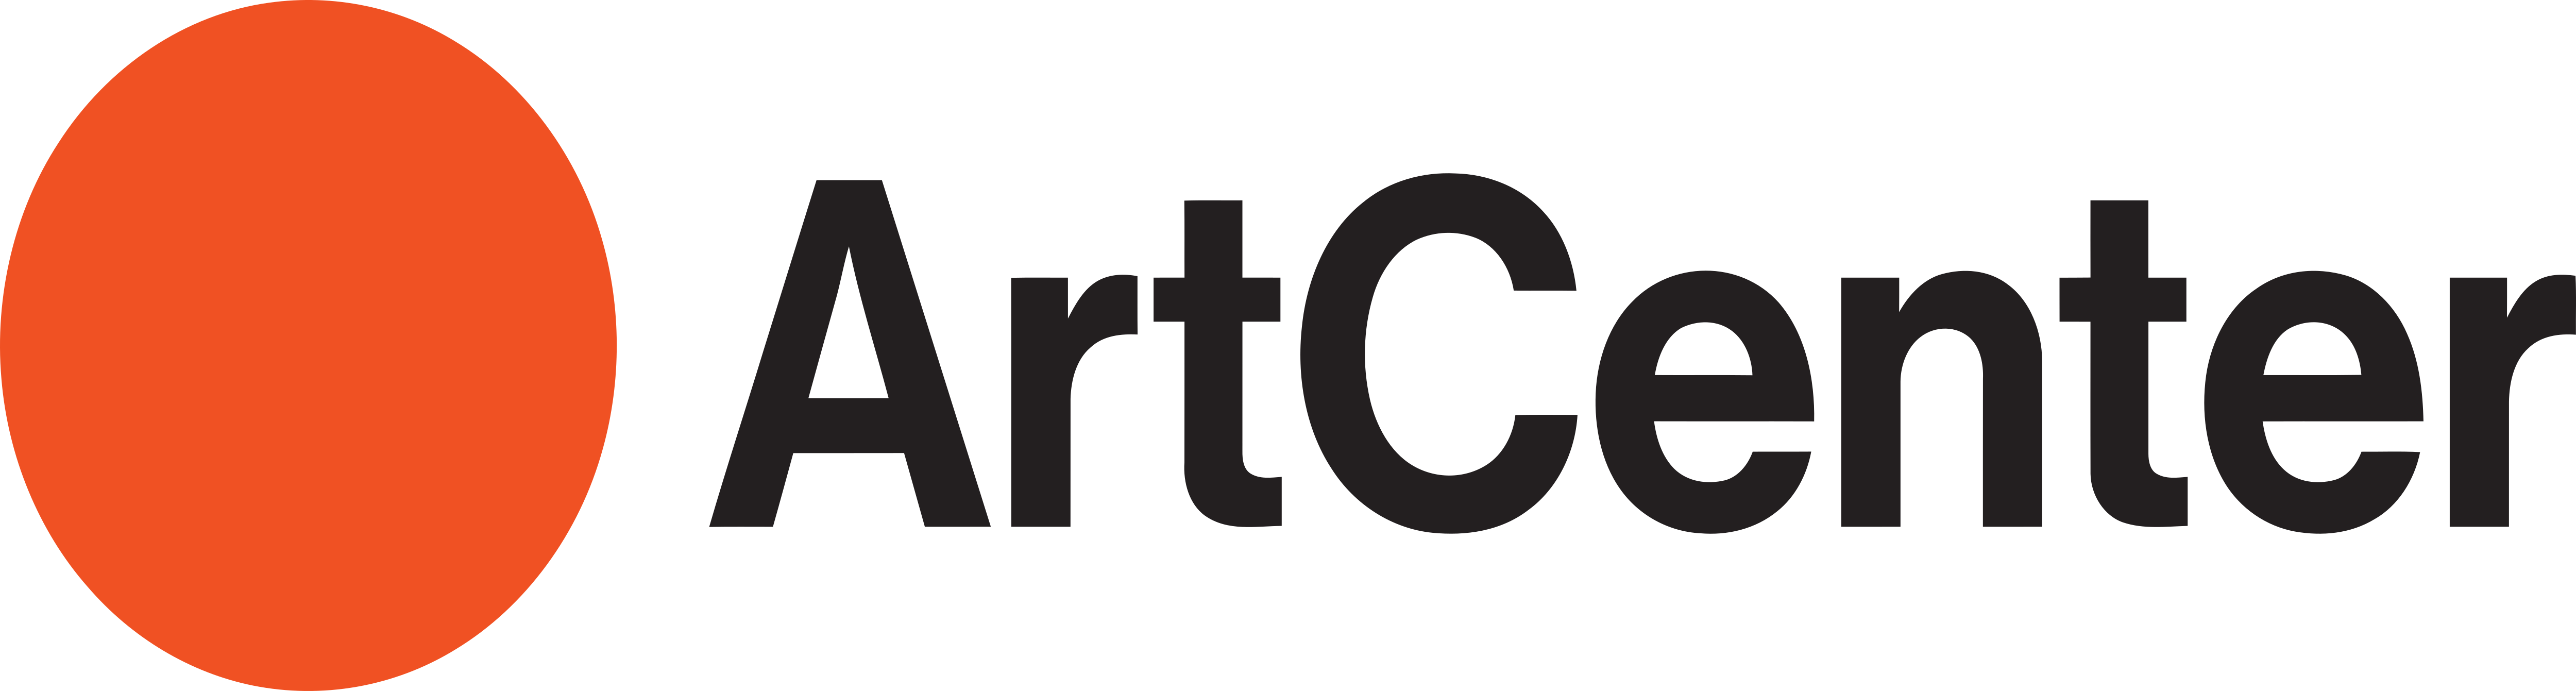 Logo Art Design : Art Studio | Brands of the World™ | Download vector ...